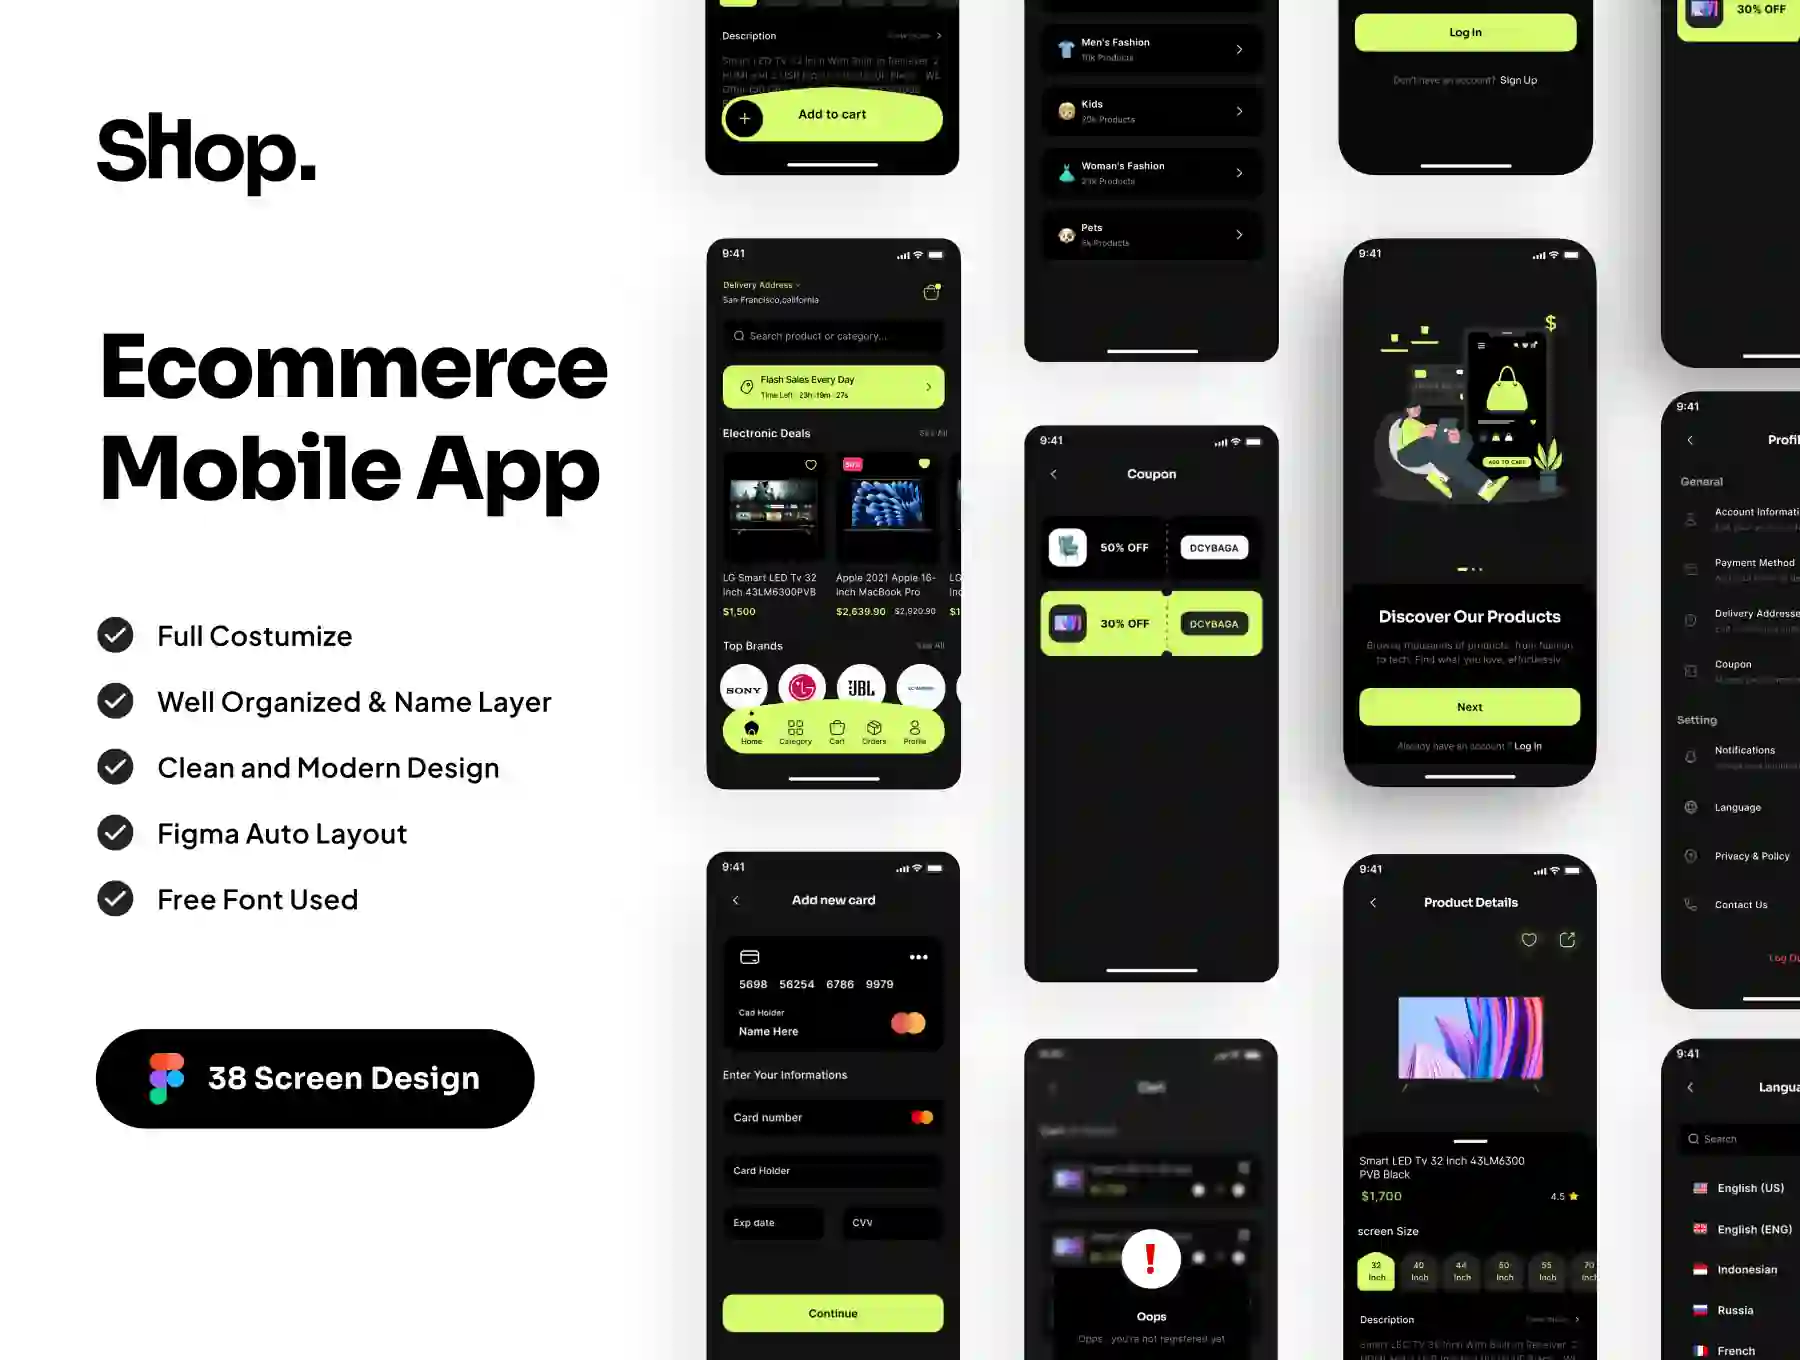 Shop - Ecommerce Mobile App